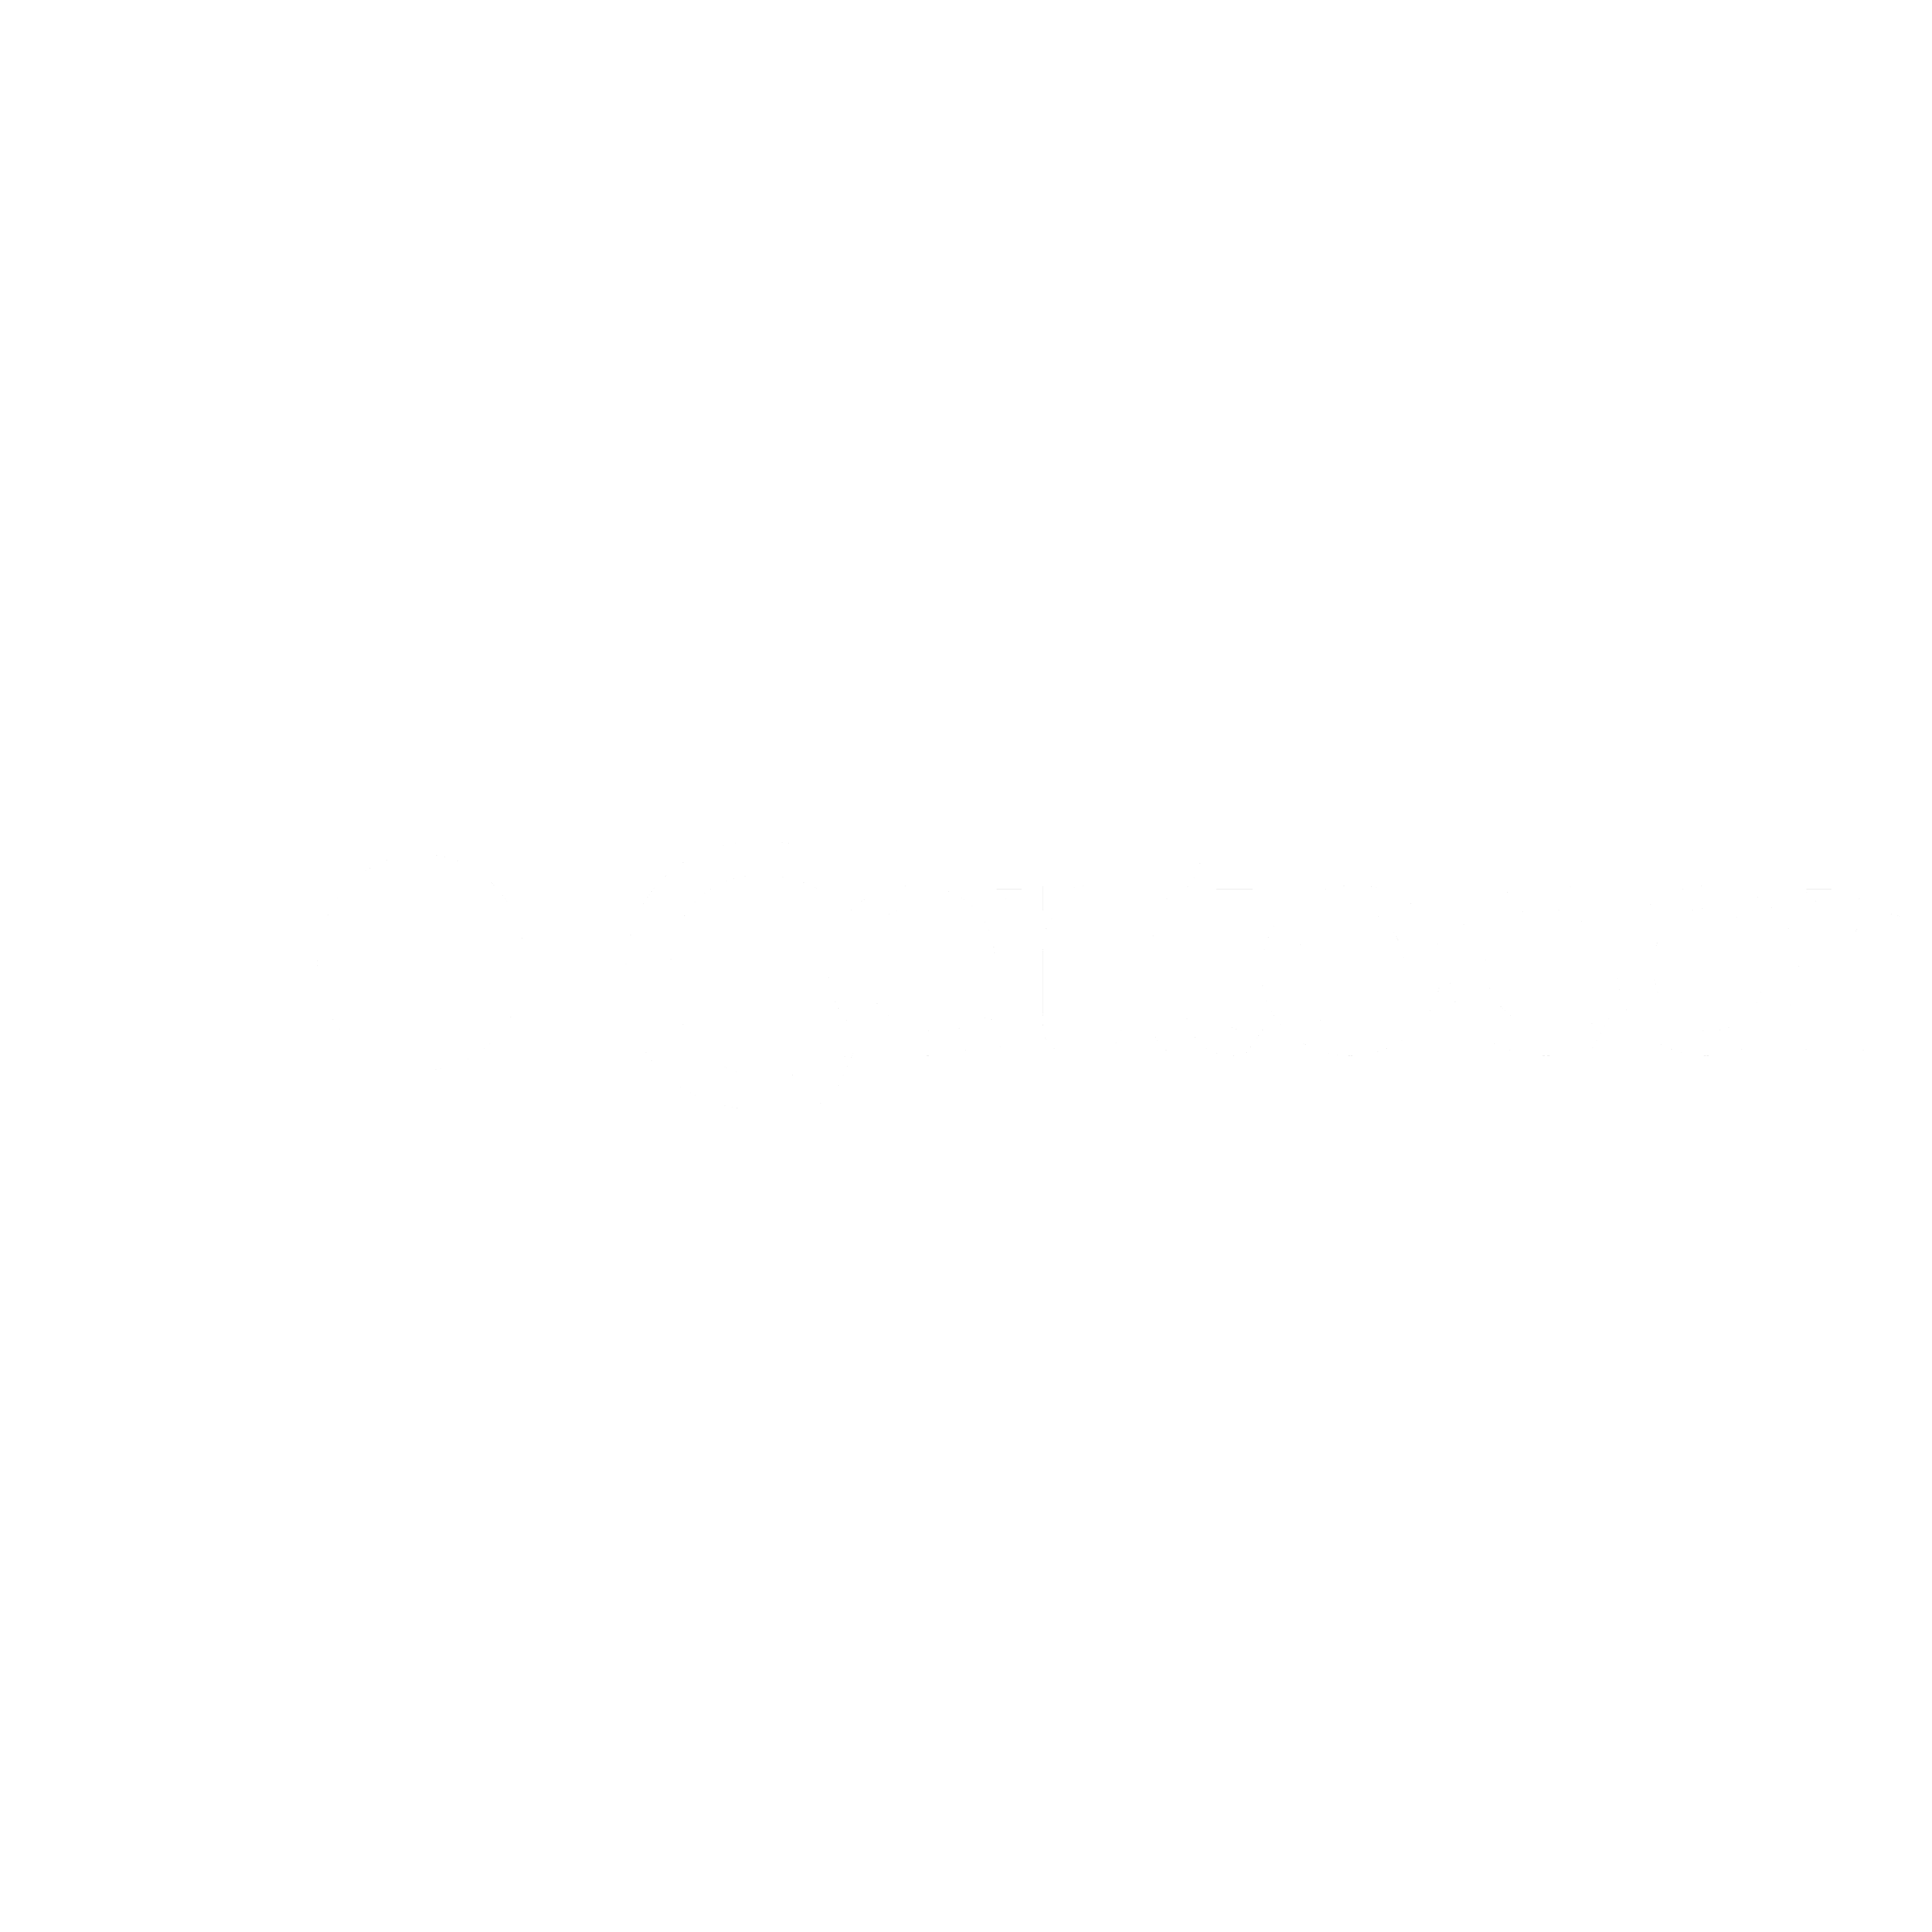 Centocor Logo - Centocor Logo PNG Transparent & SVG Vector - Freebie Supply